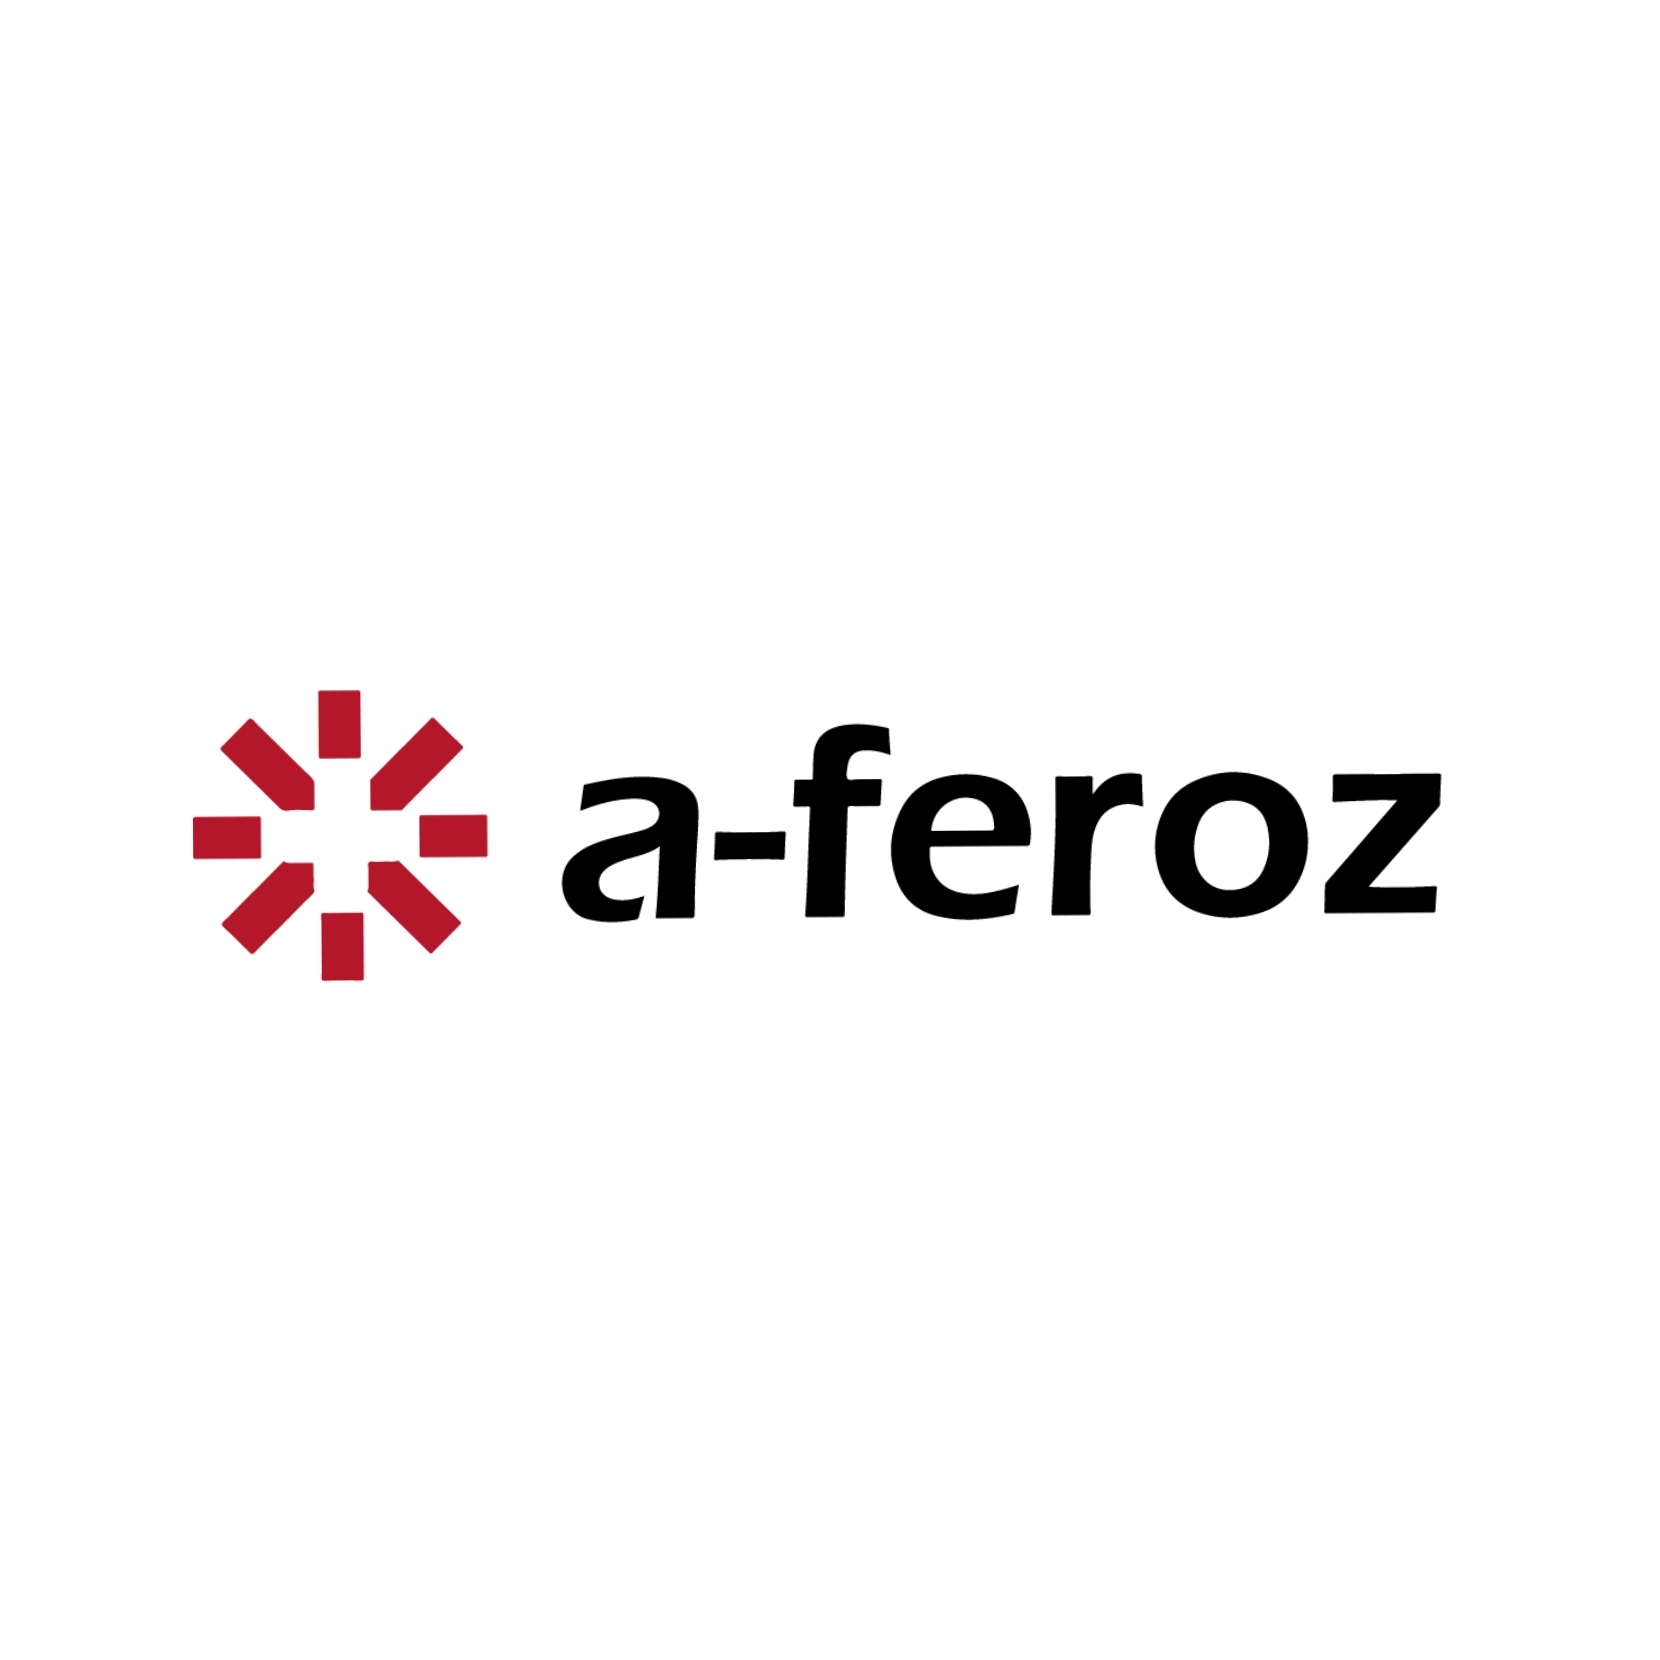 A-Feroz Group